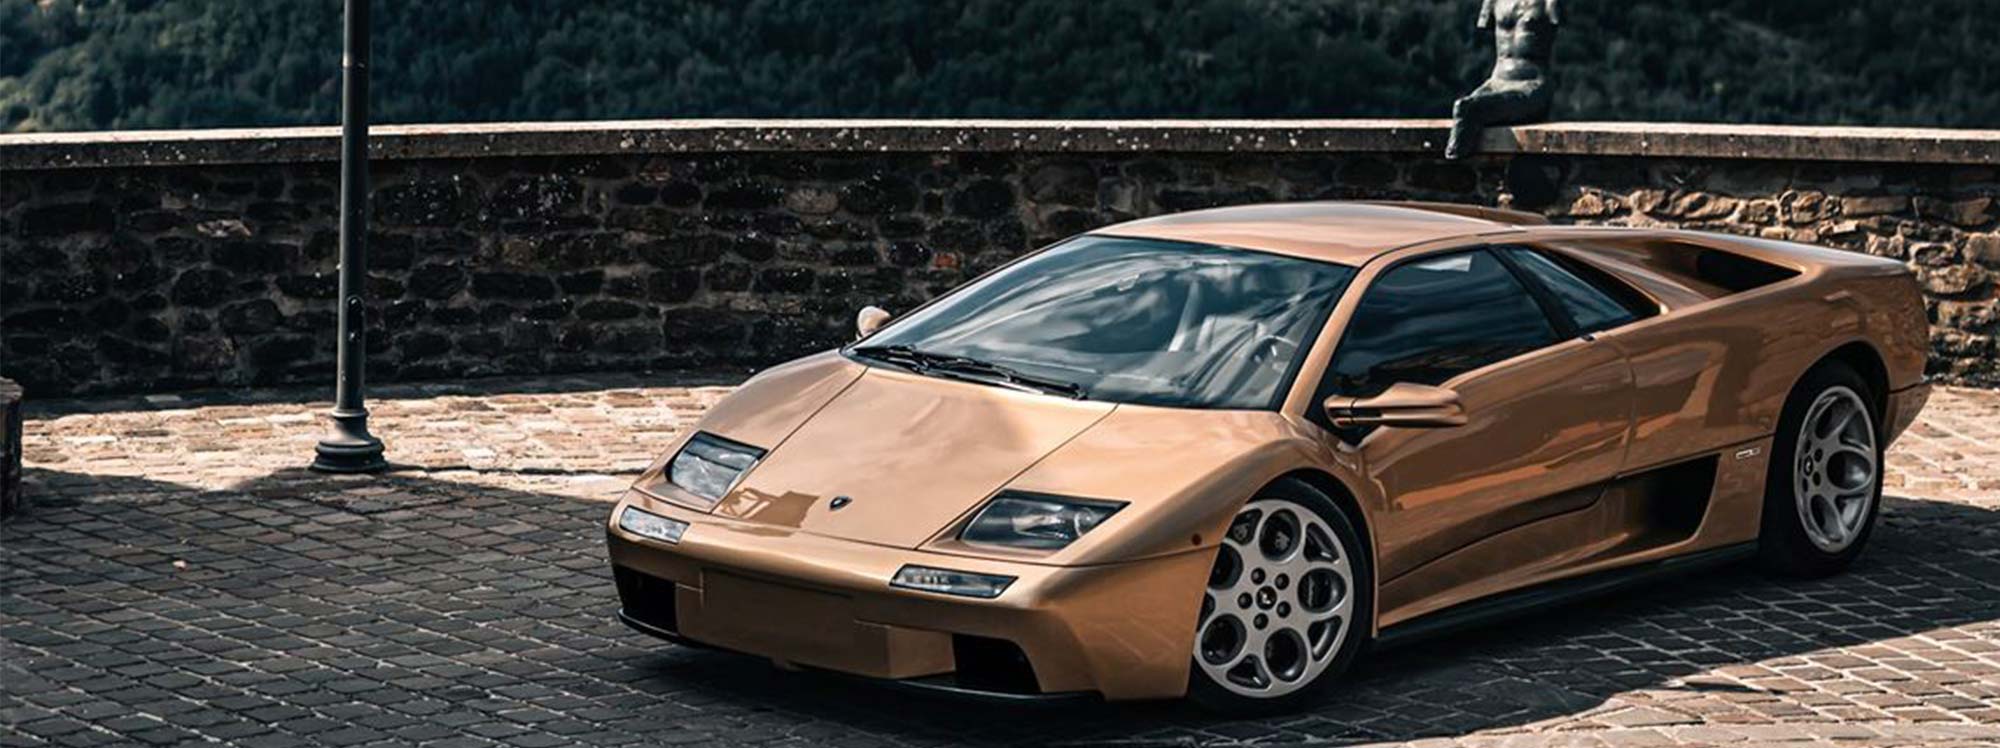 Diablo: el legendario Lamborghini V12 que define los superdeportivos de la década